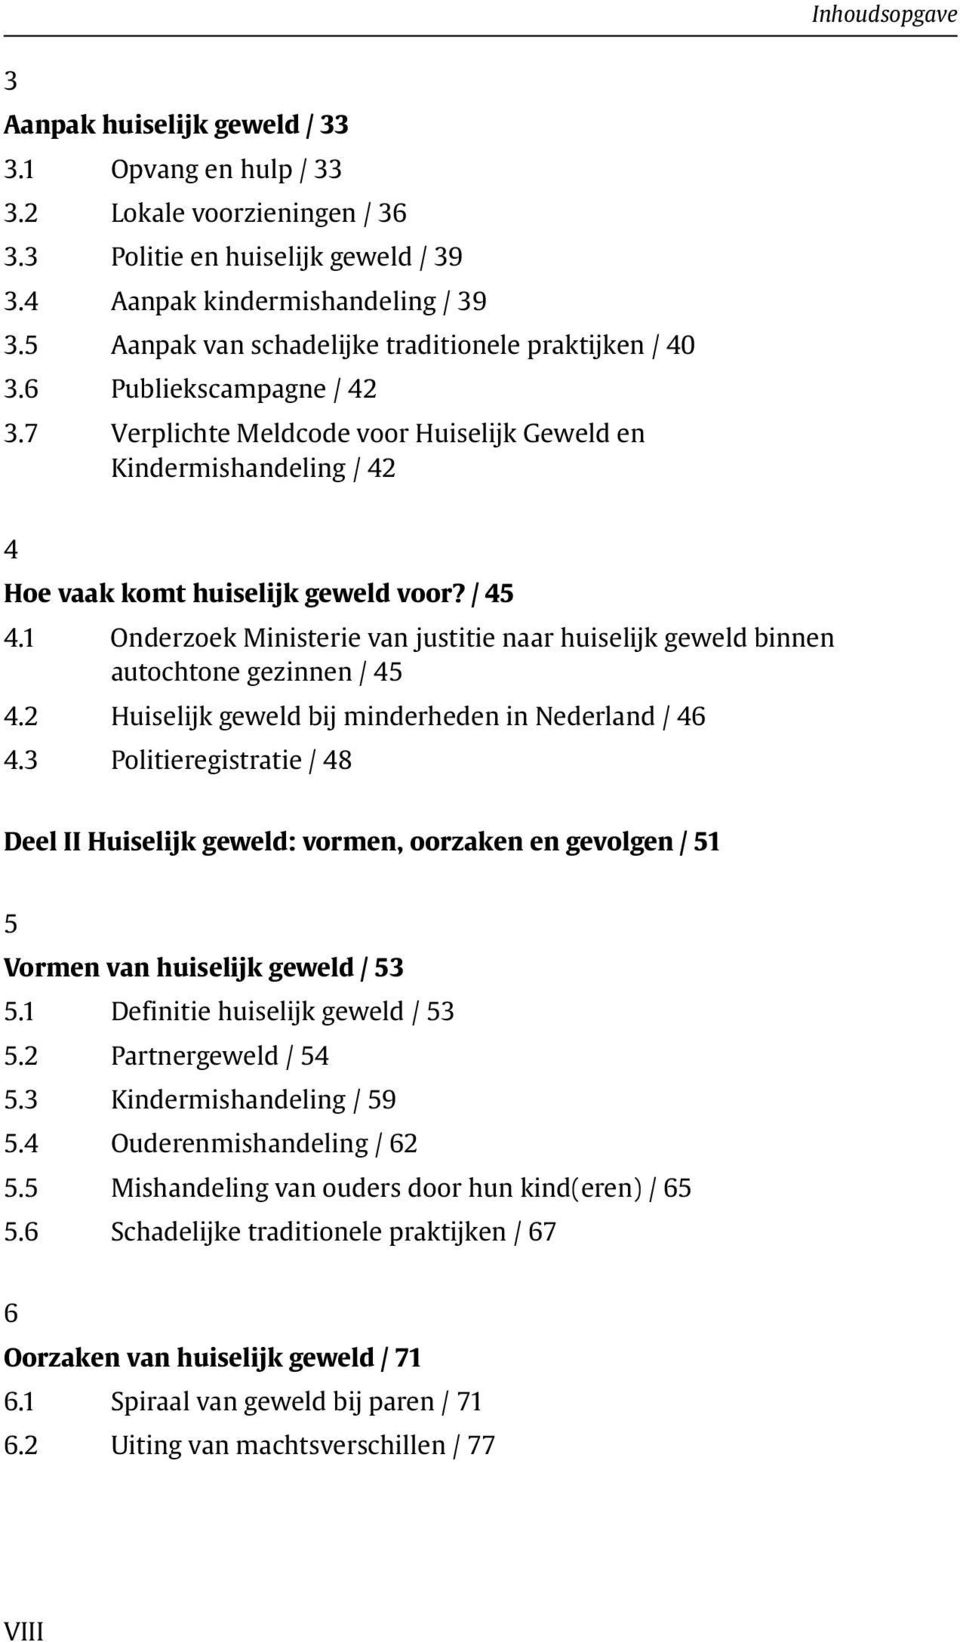 1 Onderzoek Ministerie van justitie naar huiselijk geweld binnen autochtone gezinnen / 45 4.2 Huiselijk geweld bij minderheden in Nederland / 46 4.